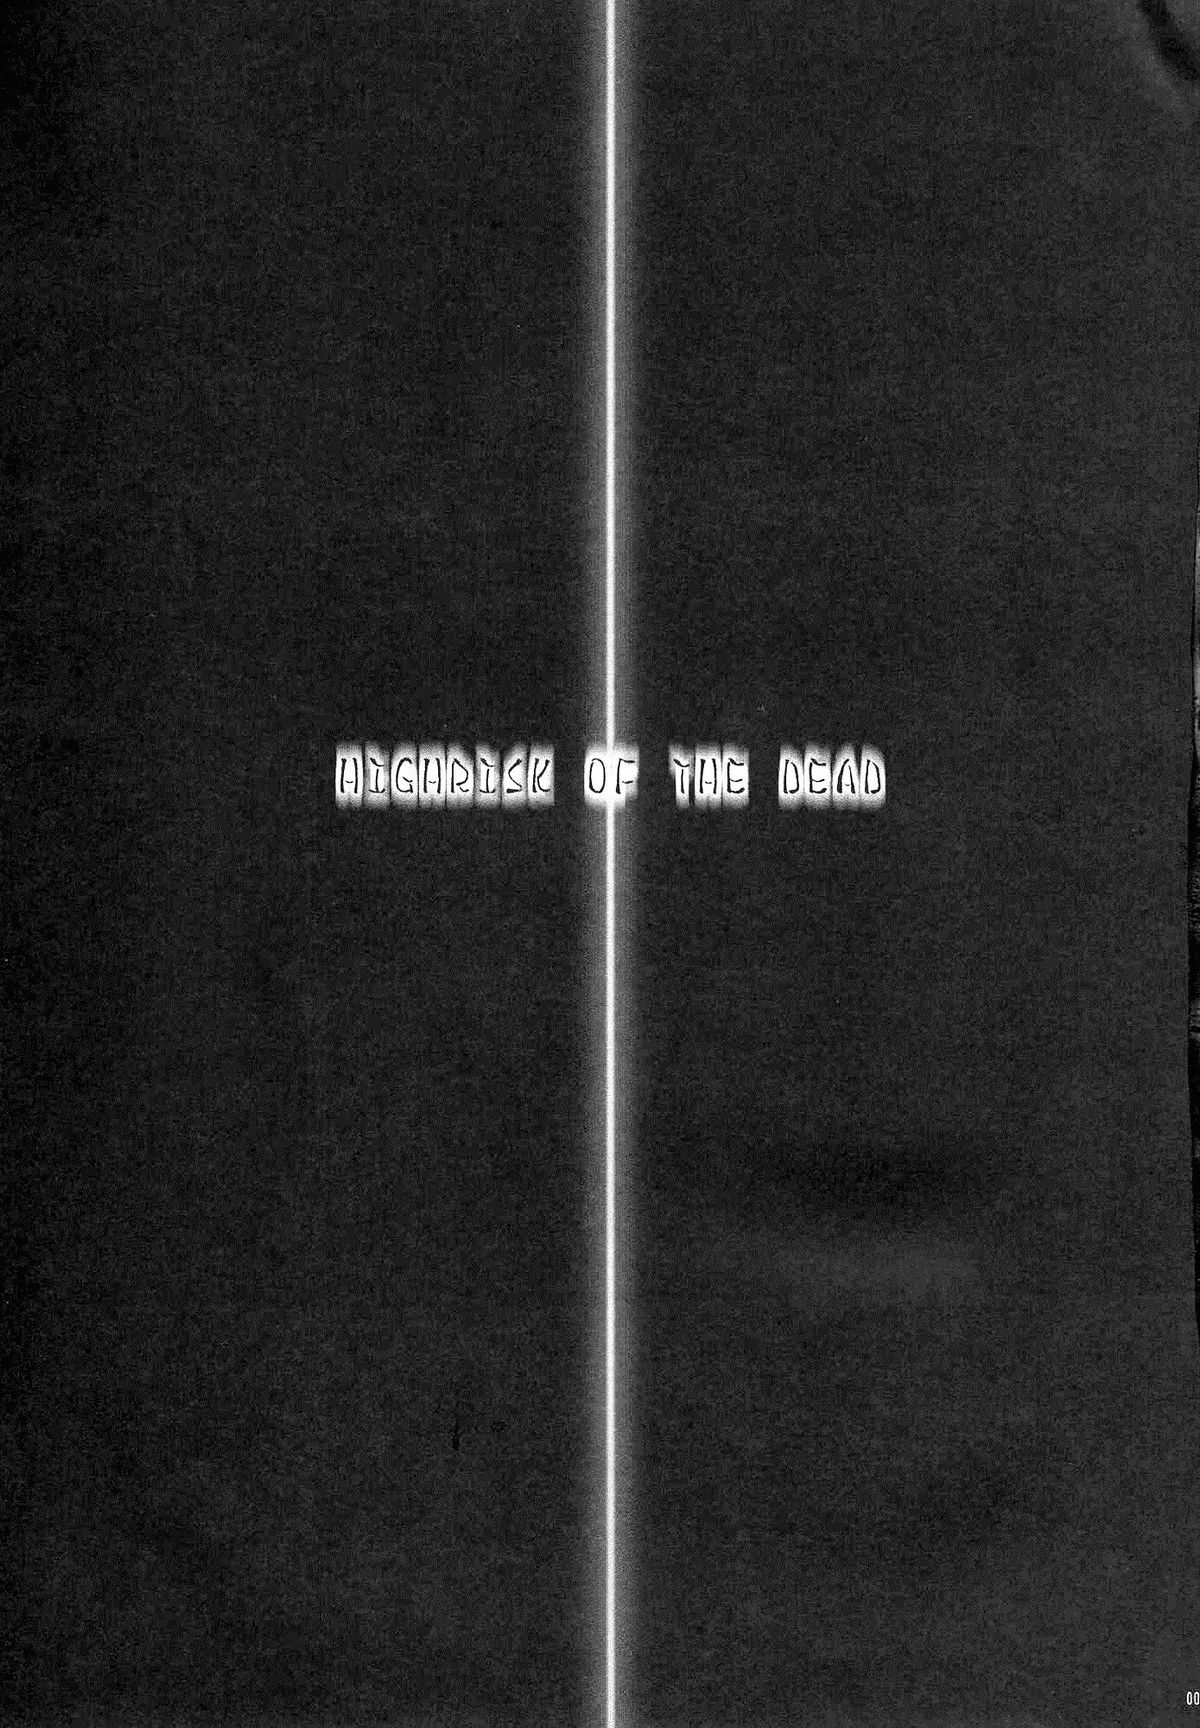 [club54 (Ichigo Mark)] HIGHRISK OF THE DEAD (HIGHSCHOOL OF THE DEAD) [Korean] [club54 (いちごまぁく)] 禁断の黙示録 ハイリスク・オブ・デッド (学園黙示録) [韓国翻訳]